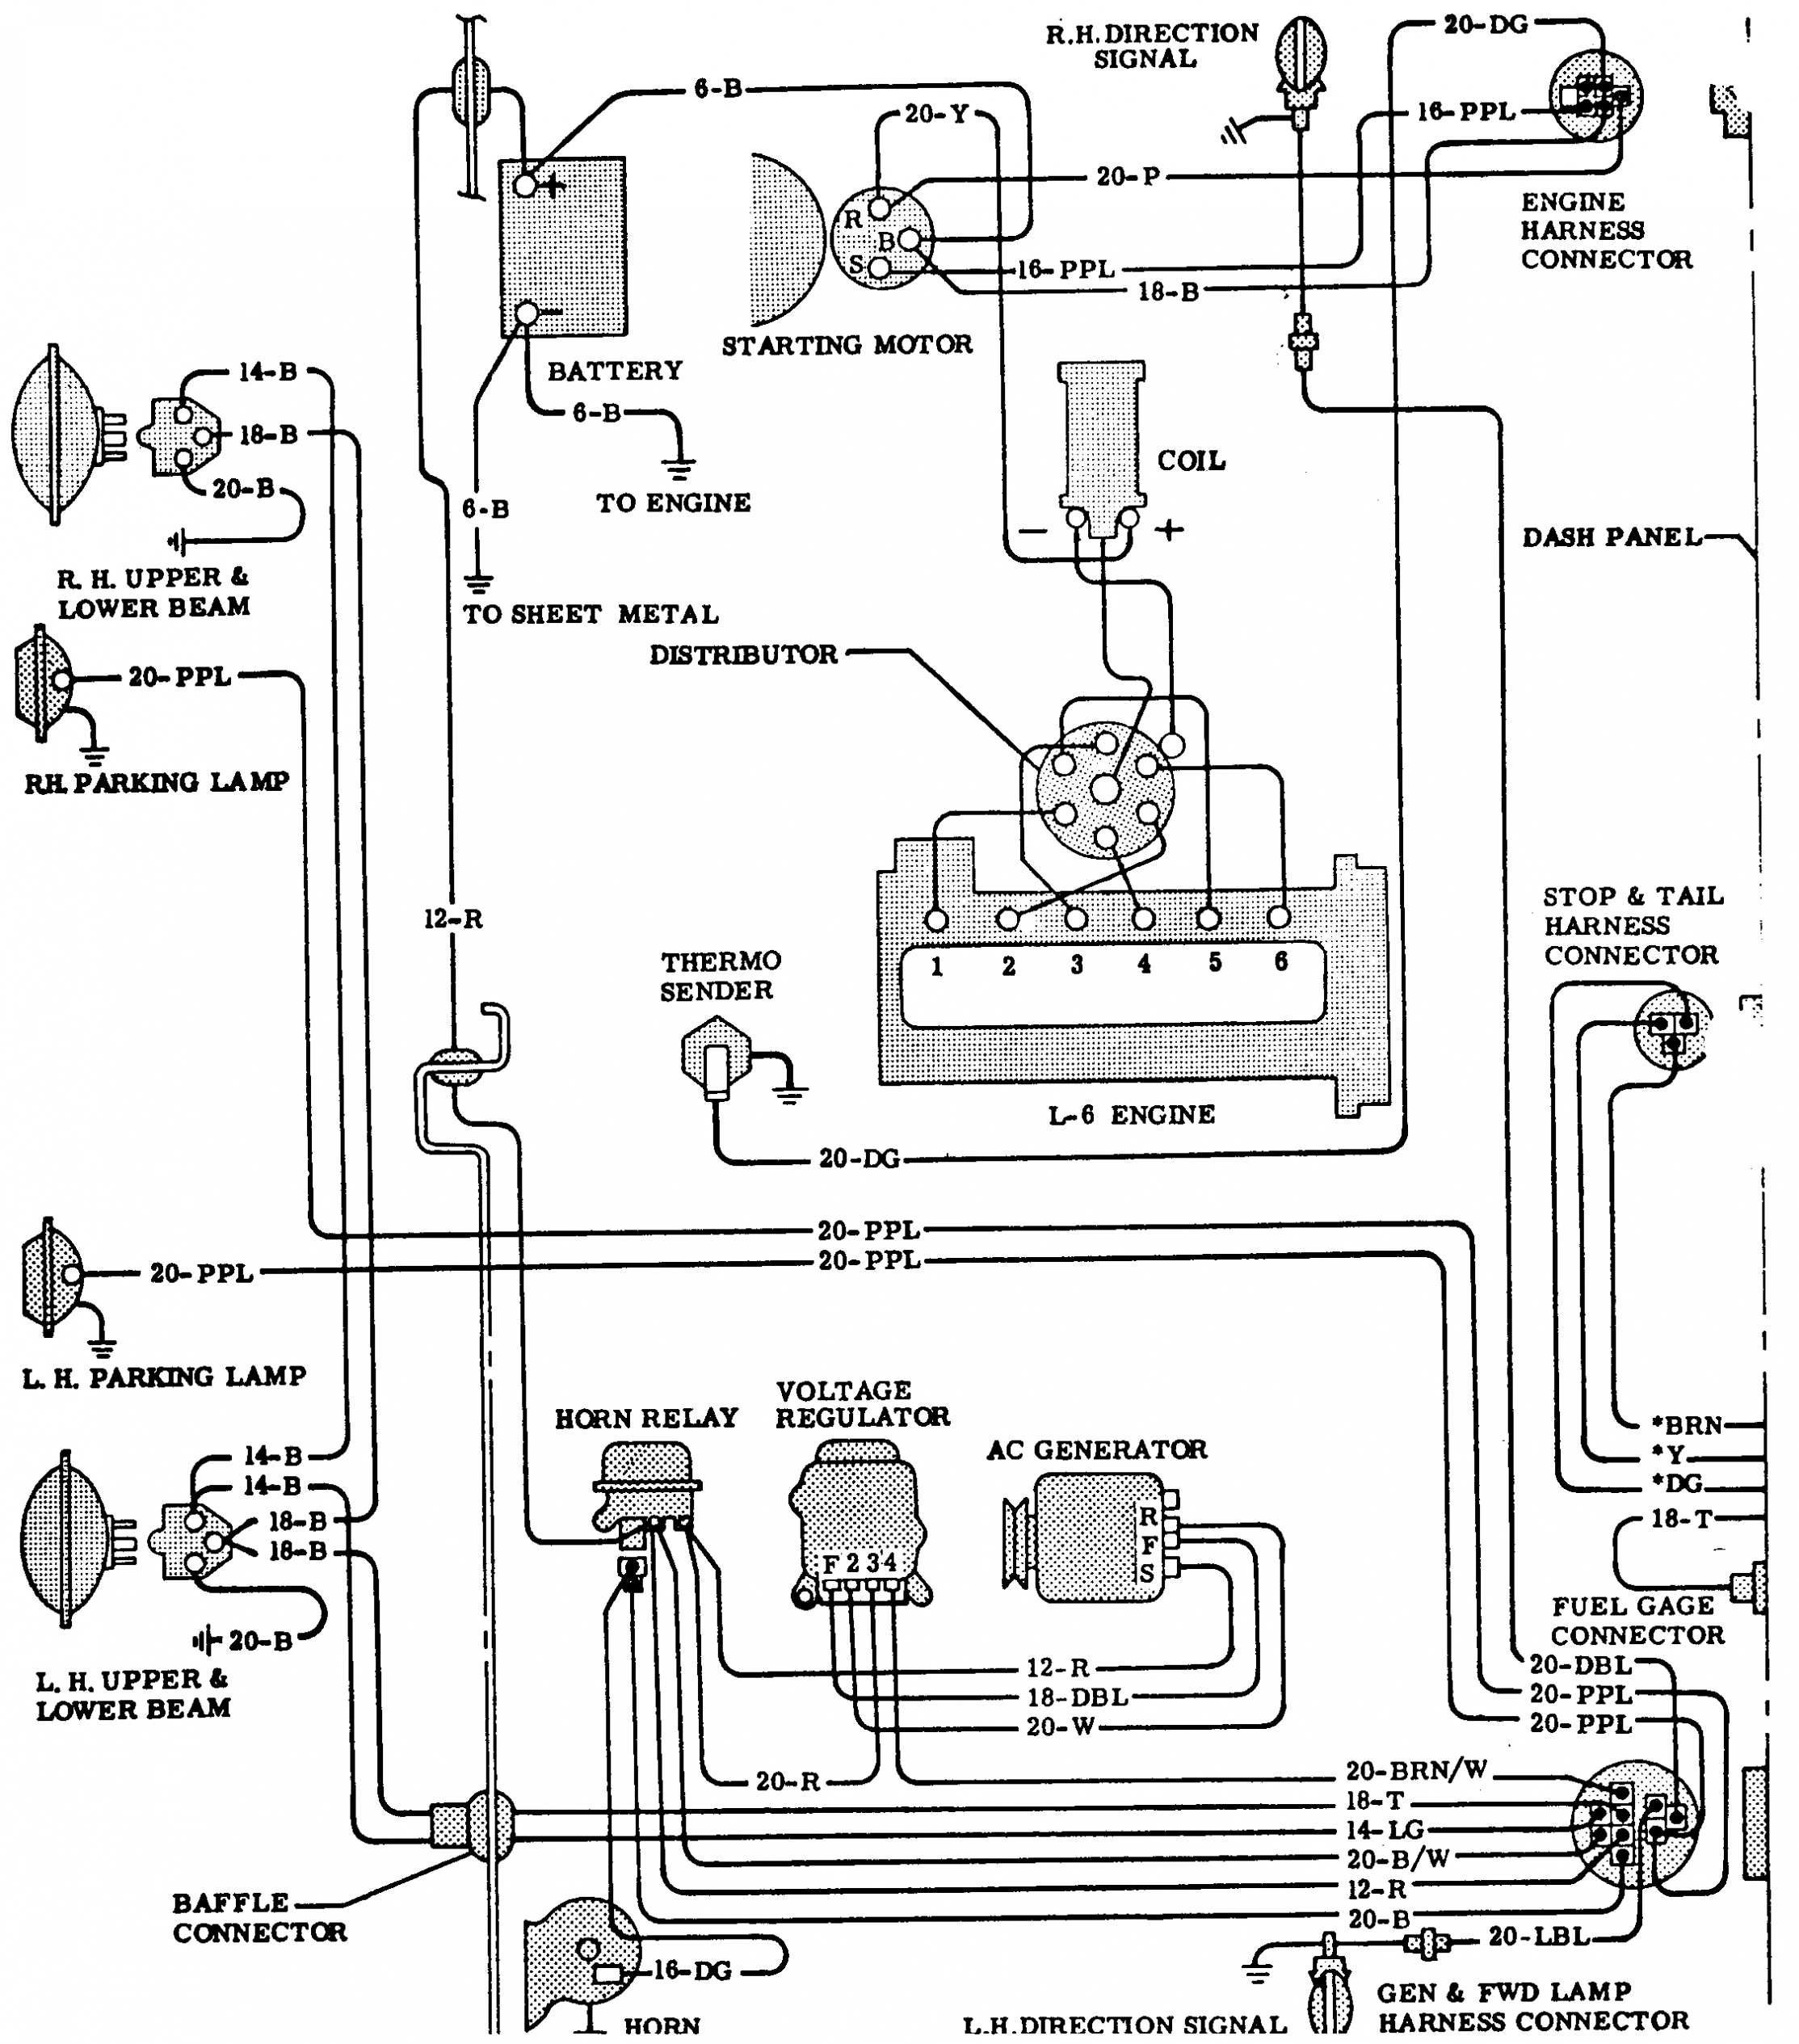 Chevy V6 Vortec Engine Diagram | Wiring Library - 4.3 Vortec Wiring Diagram